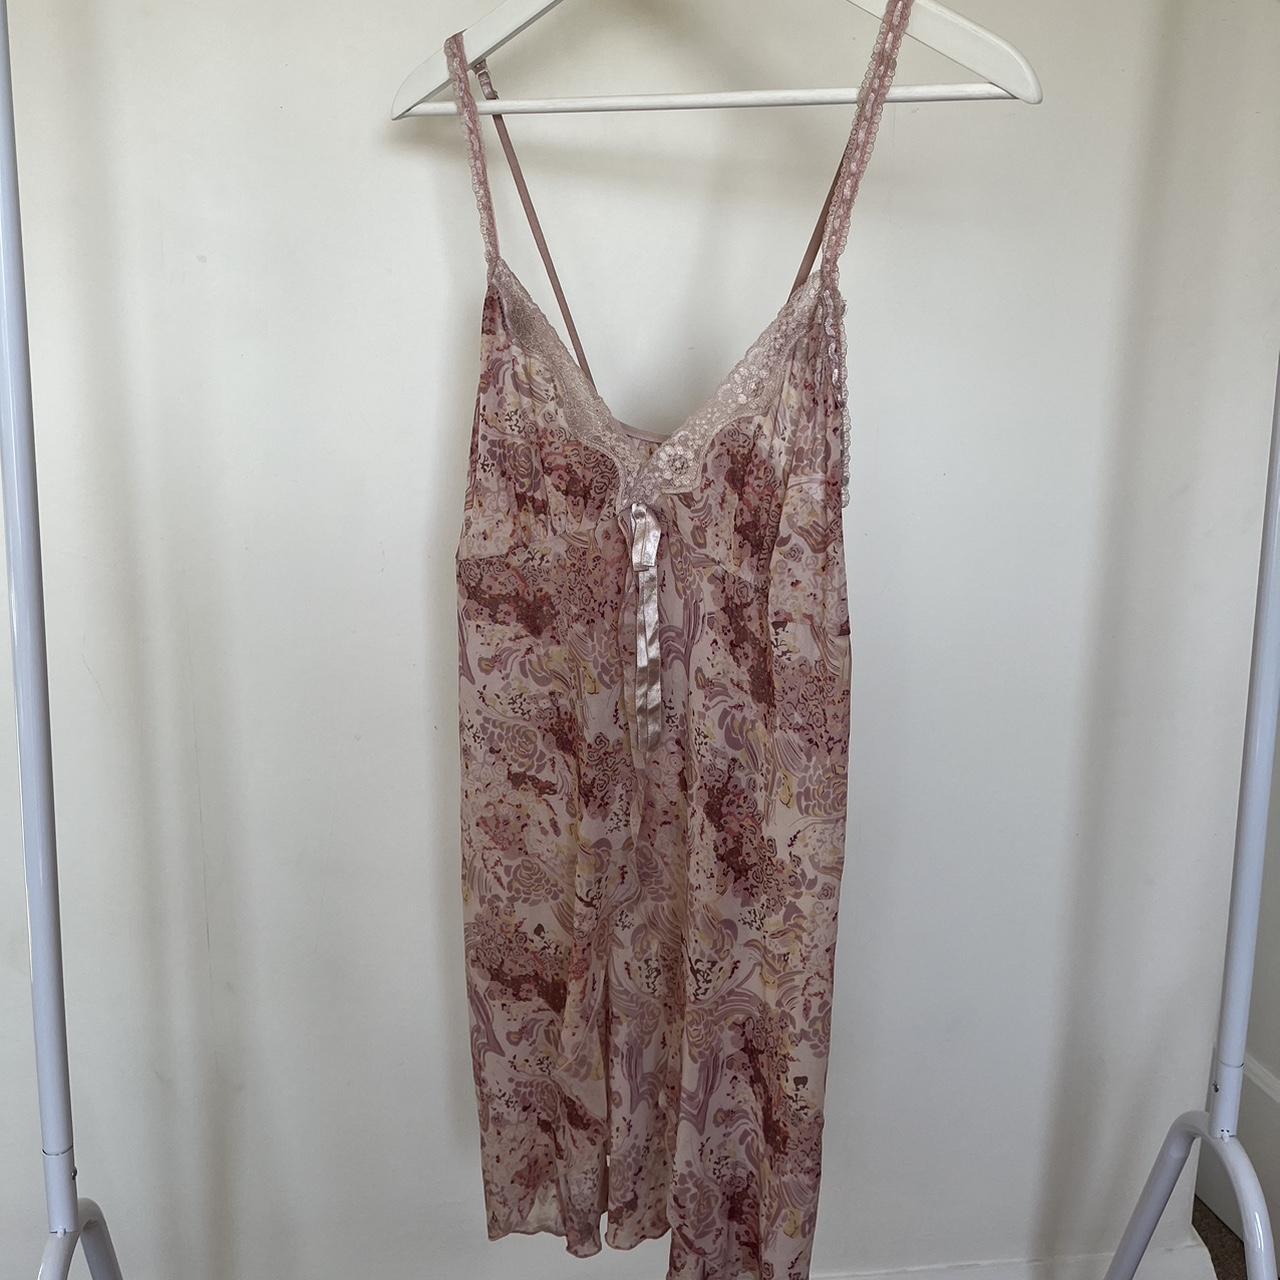 Vintage pink slip mini dress with floral pattern,... - Depop